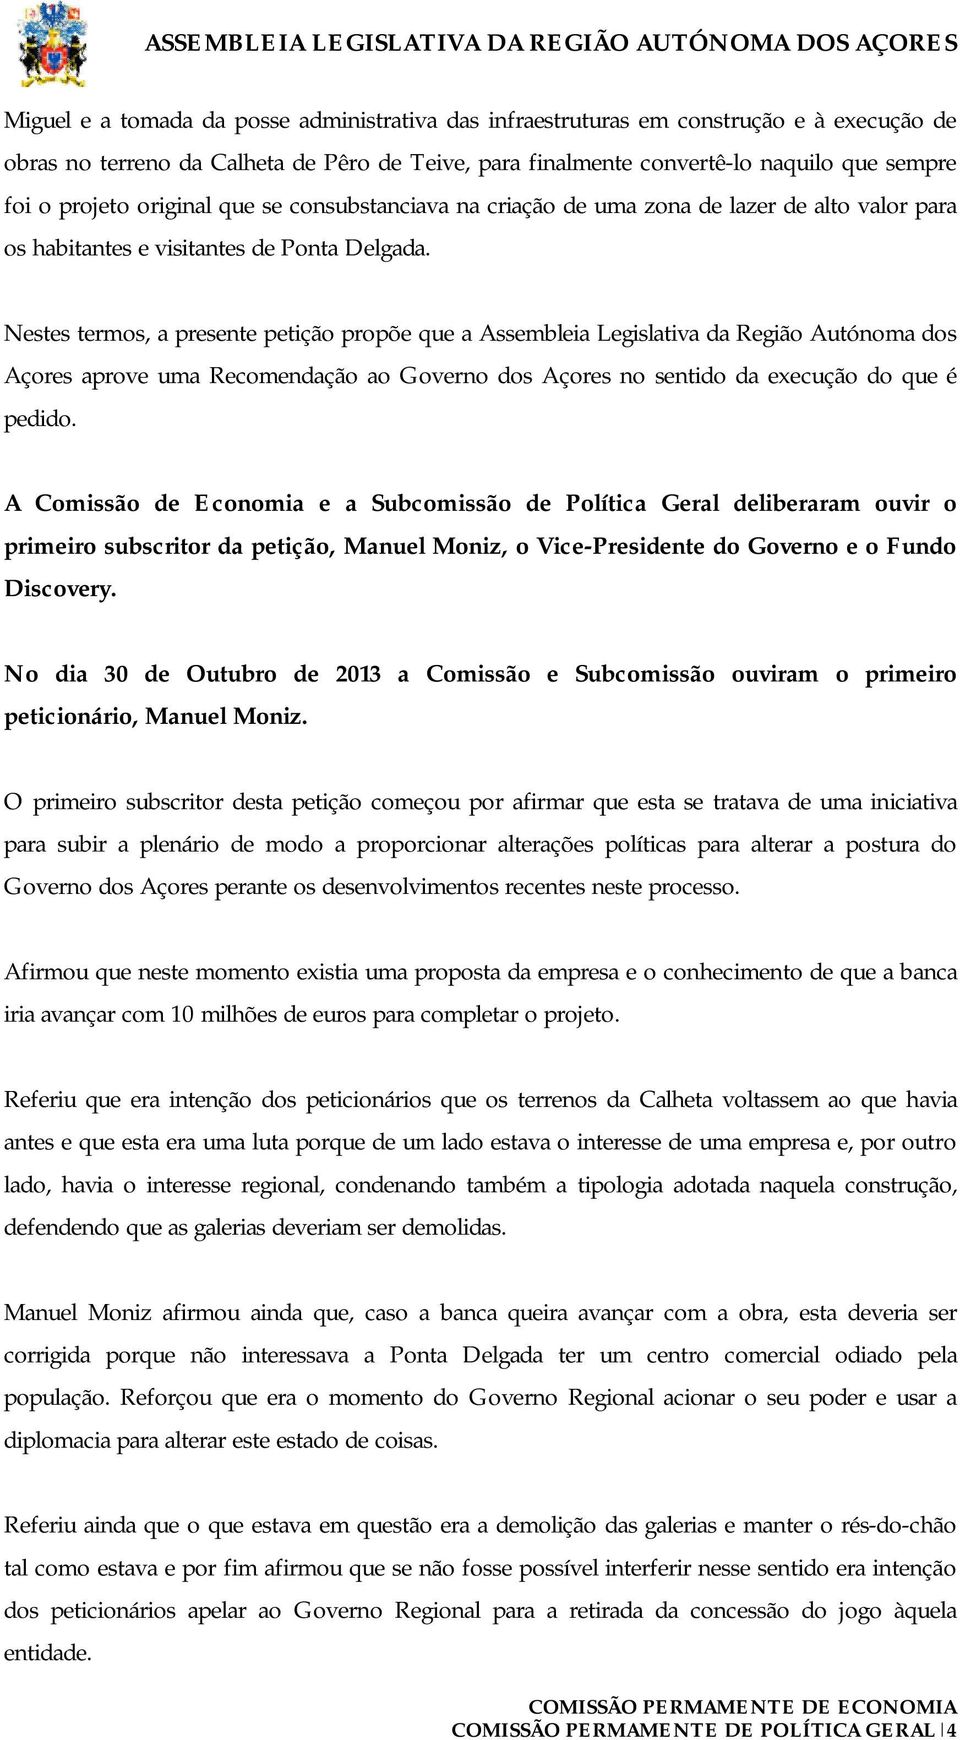 Nestes termos, a presente petição propõe que a Assembleia Legislativa da Região Autónoma dos Açores aprove uma Recomendação ao Governo dos Açores no sentido da execução do que é pedido.